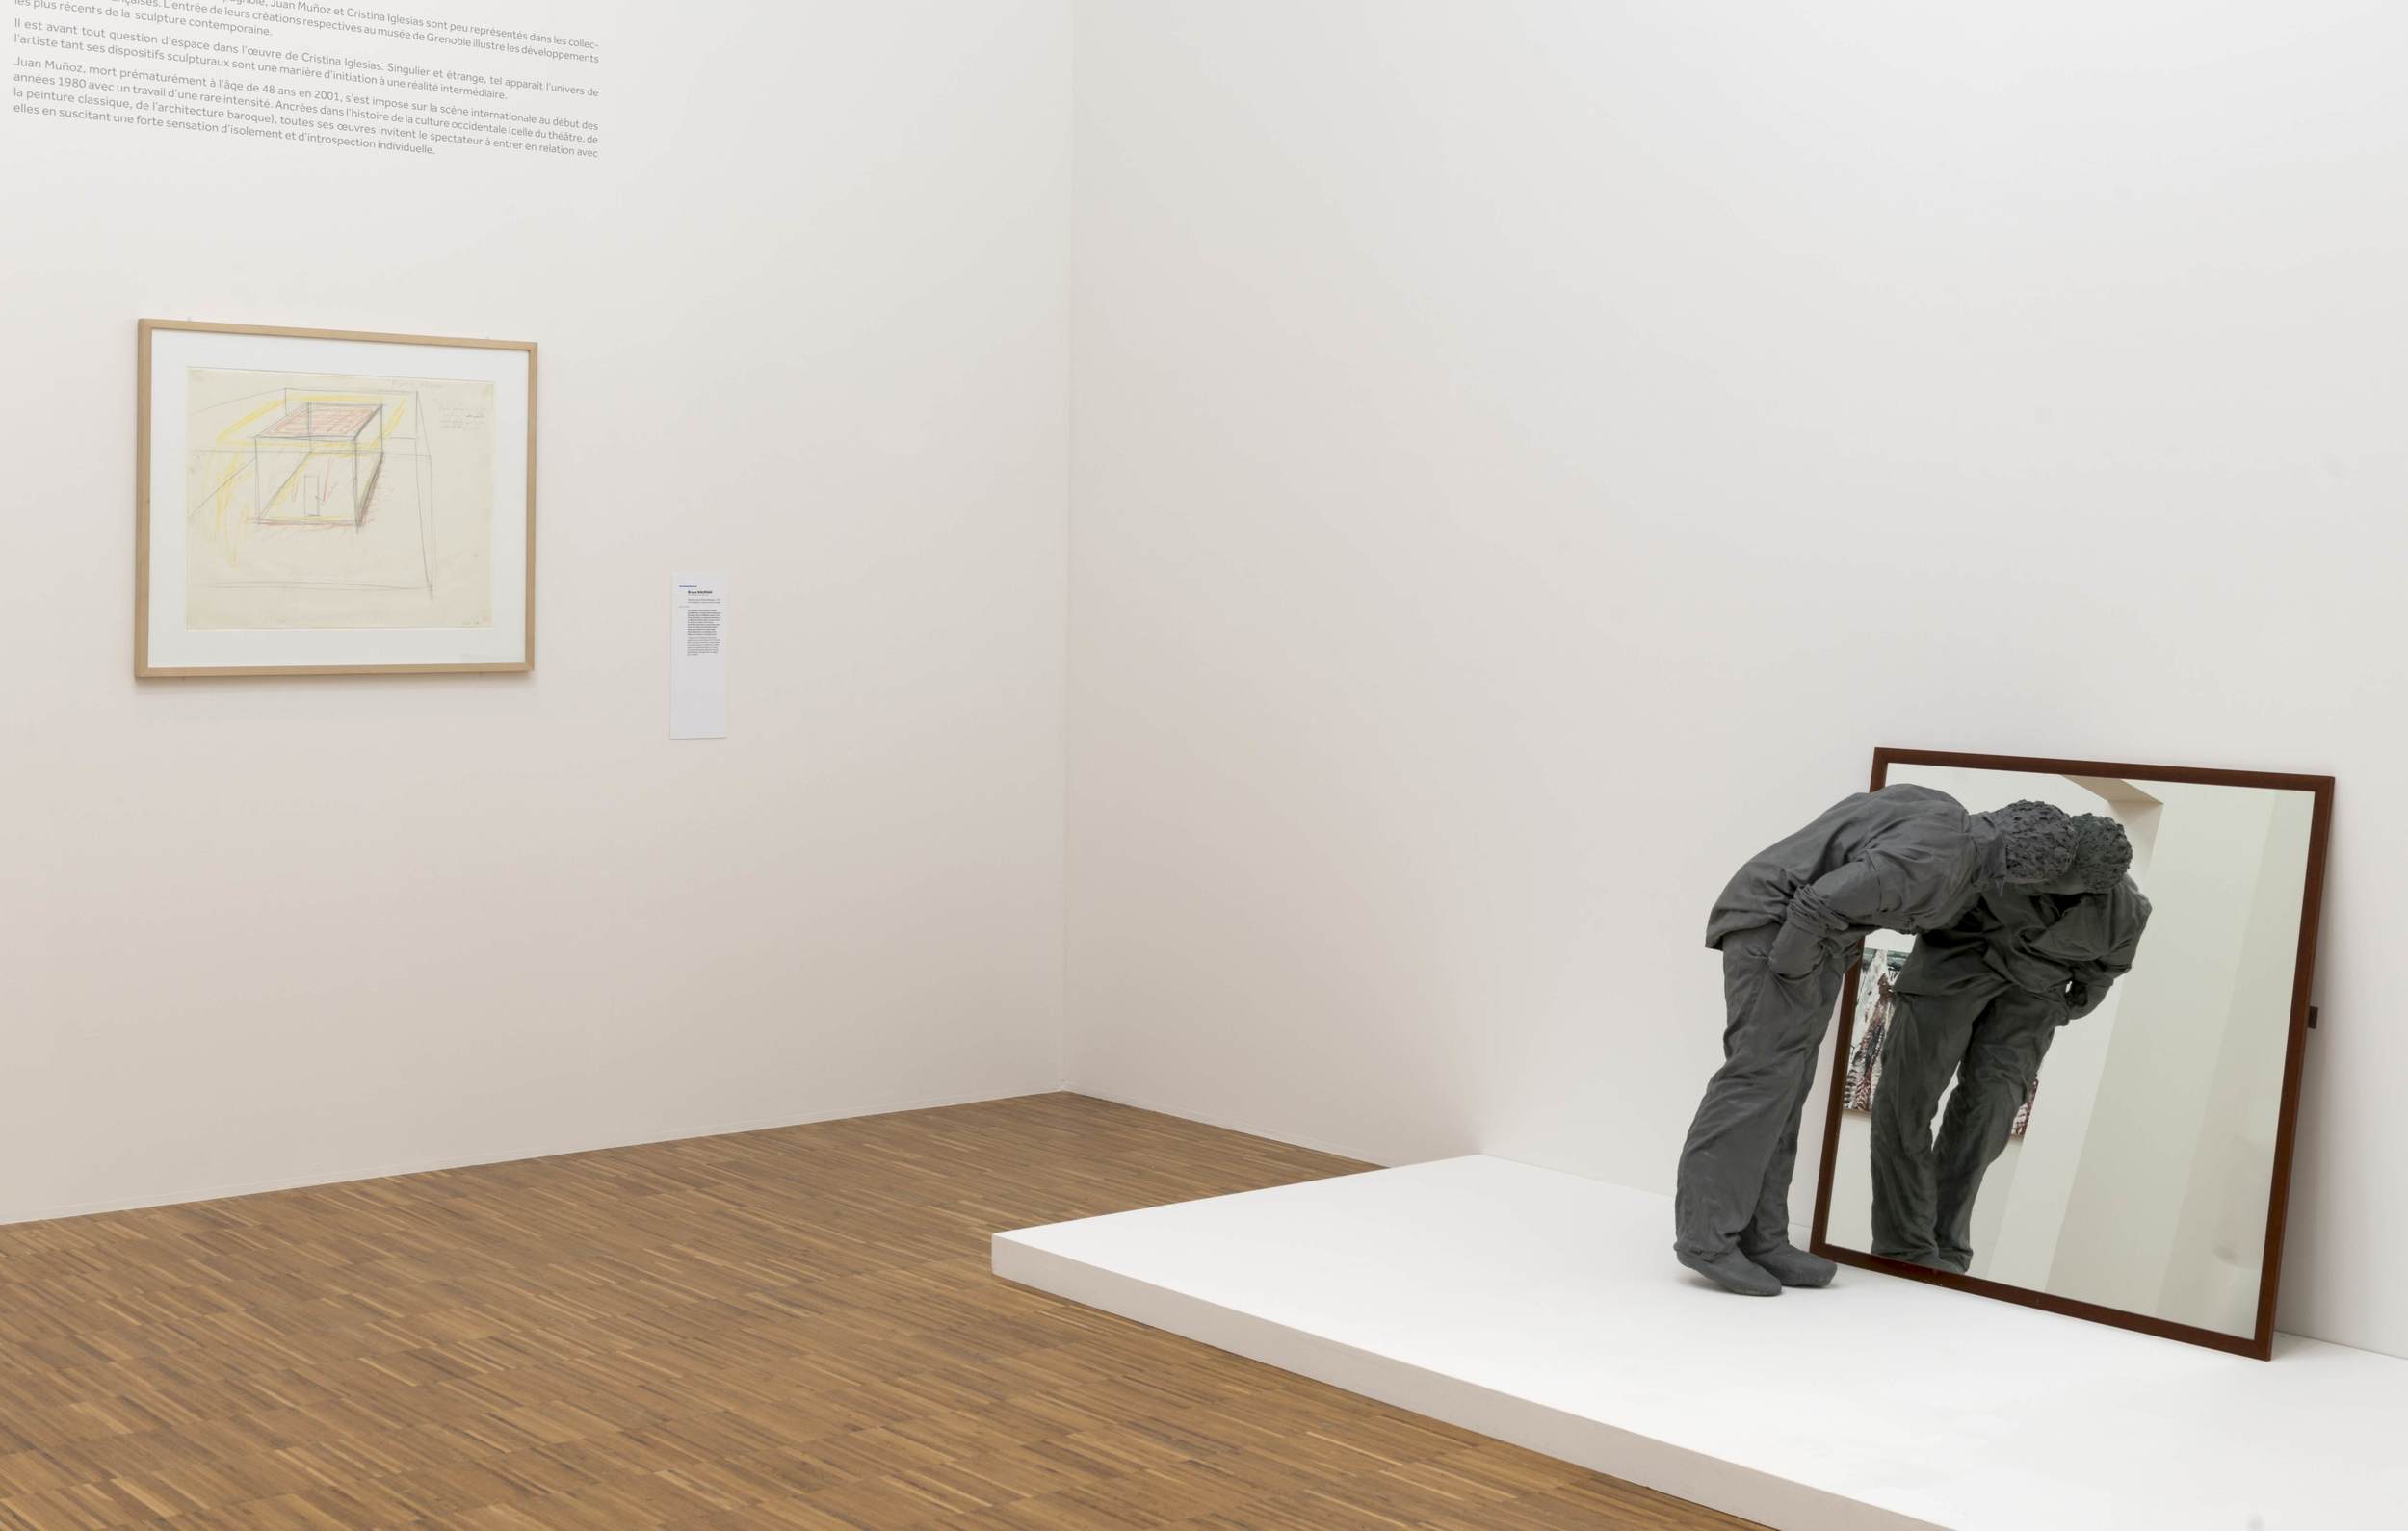   De Picasso à Warhol , Une Décennie d'Acquisitions, Musée de Grenoble (FR)&nbsp;2015. Curator Guy Tosatto.&nbsp;Artists in view: Bruce Nauman, Juan Munoz 